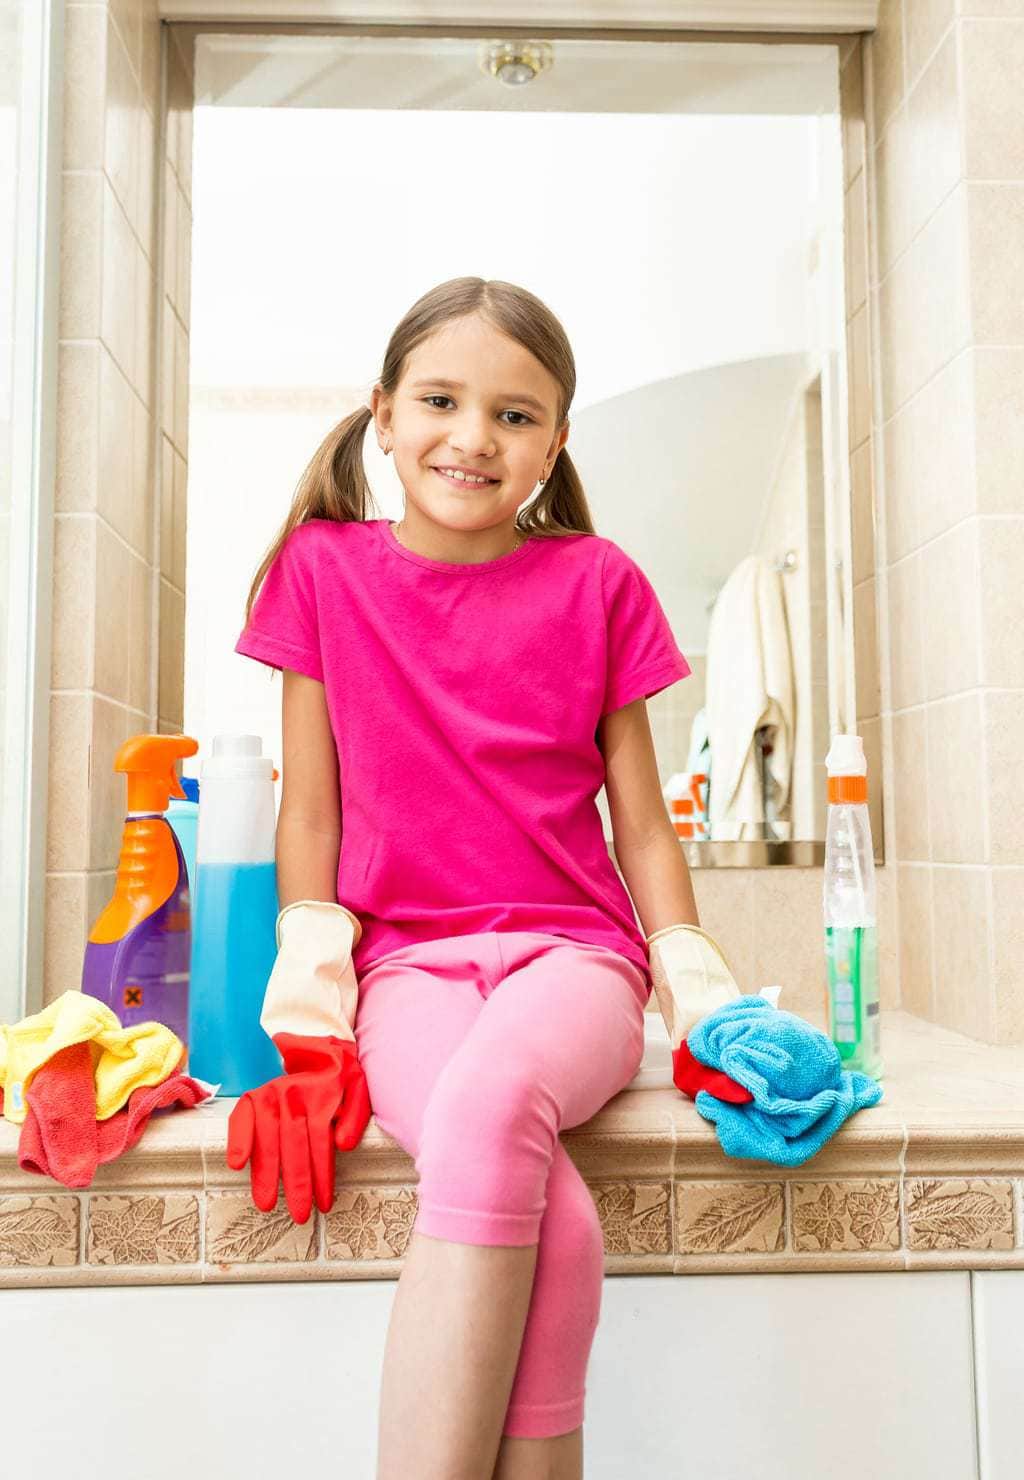 clean bathrooms, kids chores